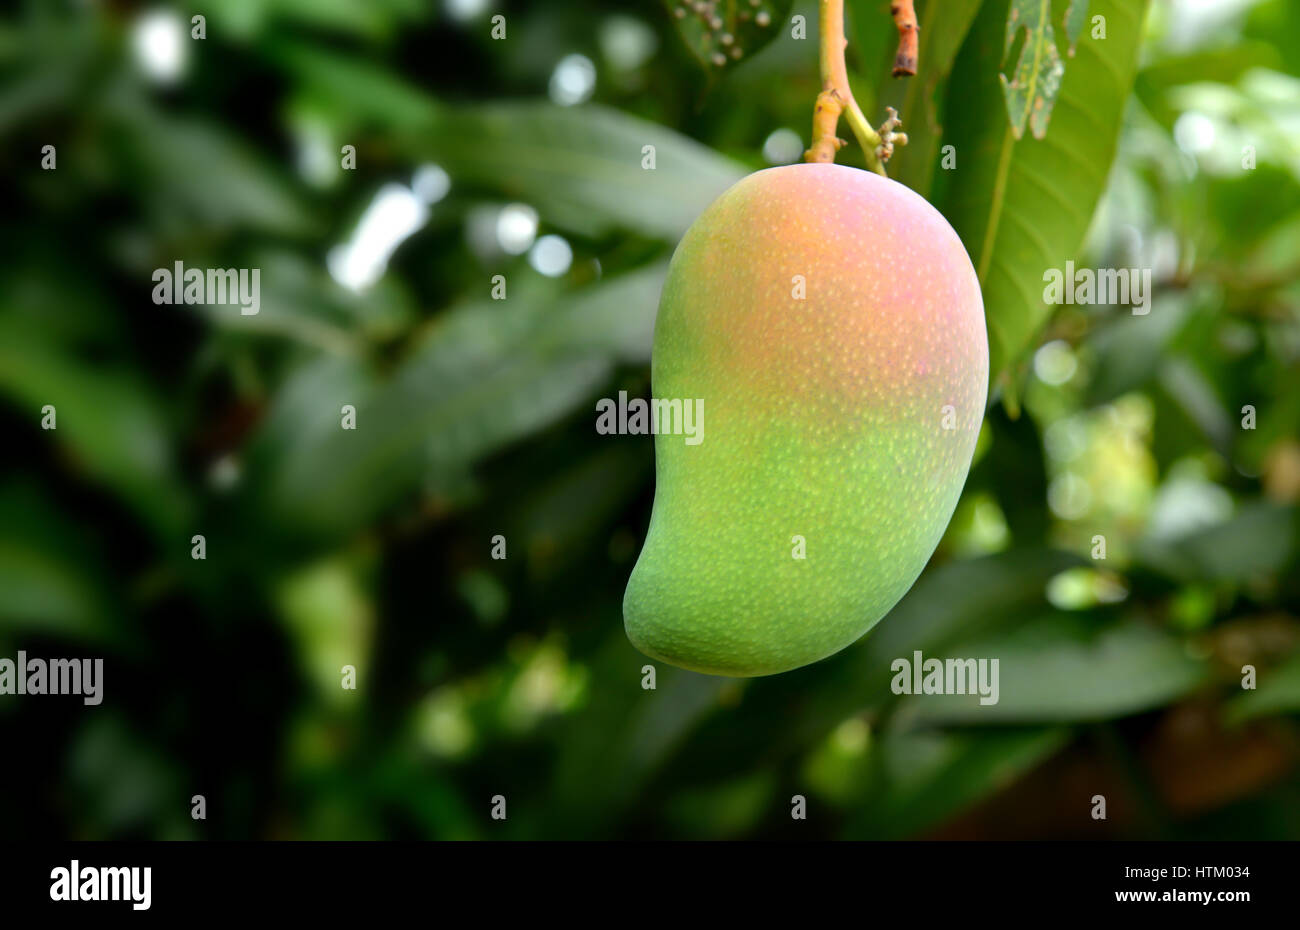 Mango verde tropical en la granja de sombra oscura en la iluminación exterior Foto de stock